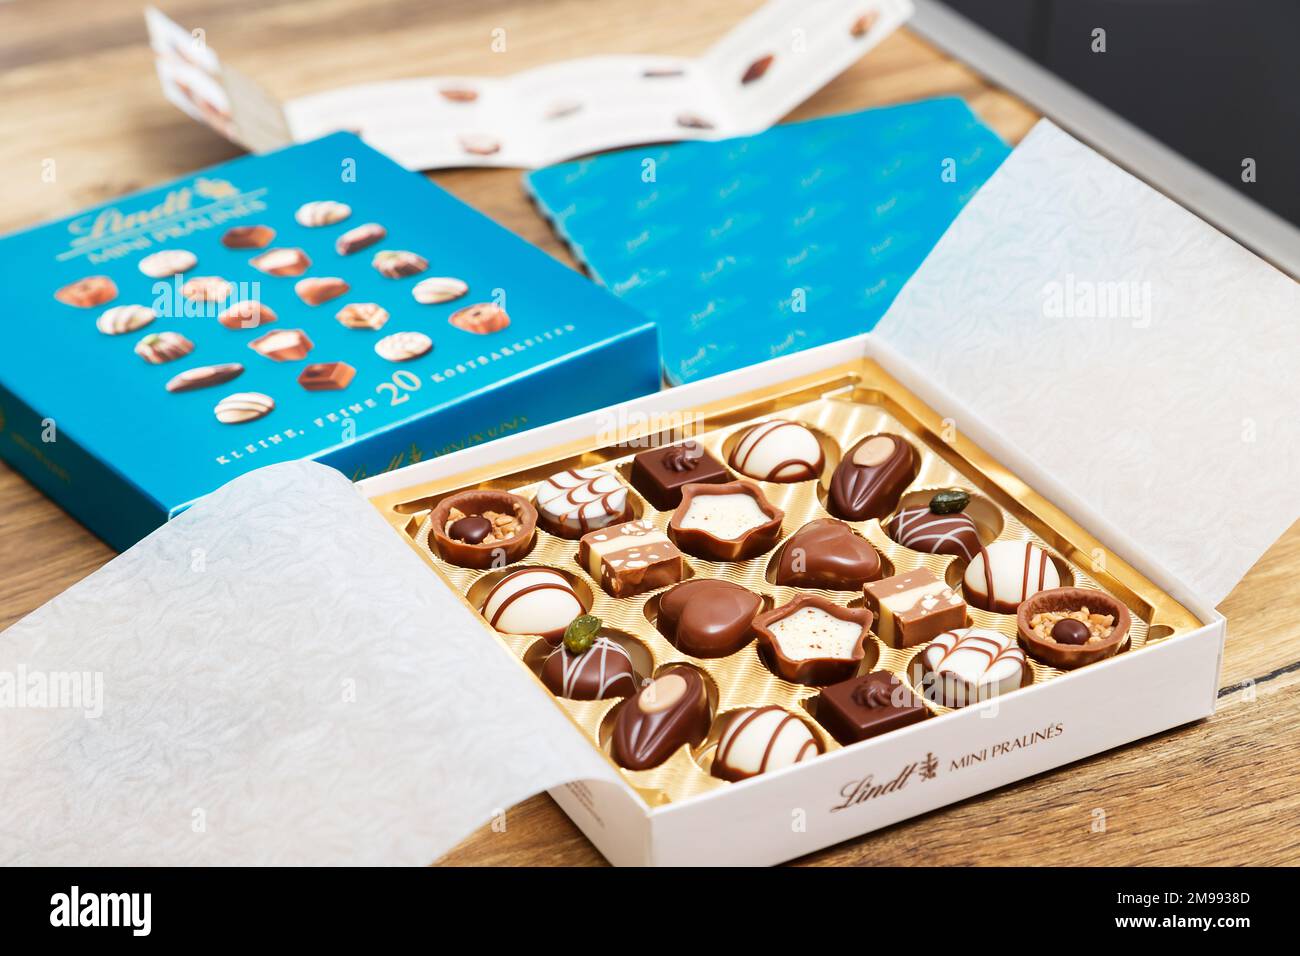 Zurigo, Svizzera - Gennaio 7 2023: Lindt Mini pralines Box. Primo piano di una piccola scatola regalo aperta di caramelle al cioccolato svizzere. Lussuosa selezione di capolavori in miniatura di latte, bianco e scuro. Foto Stock